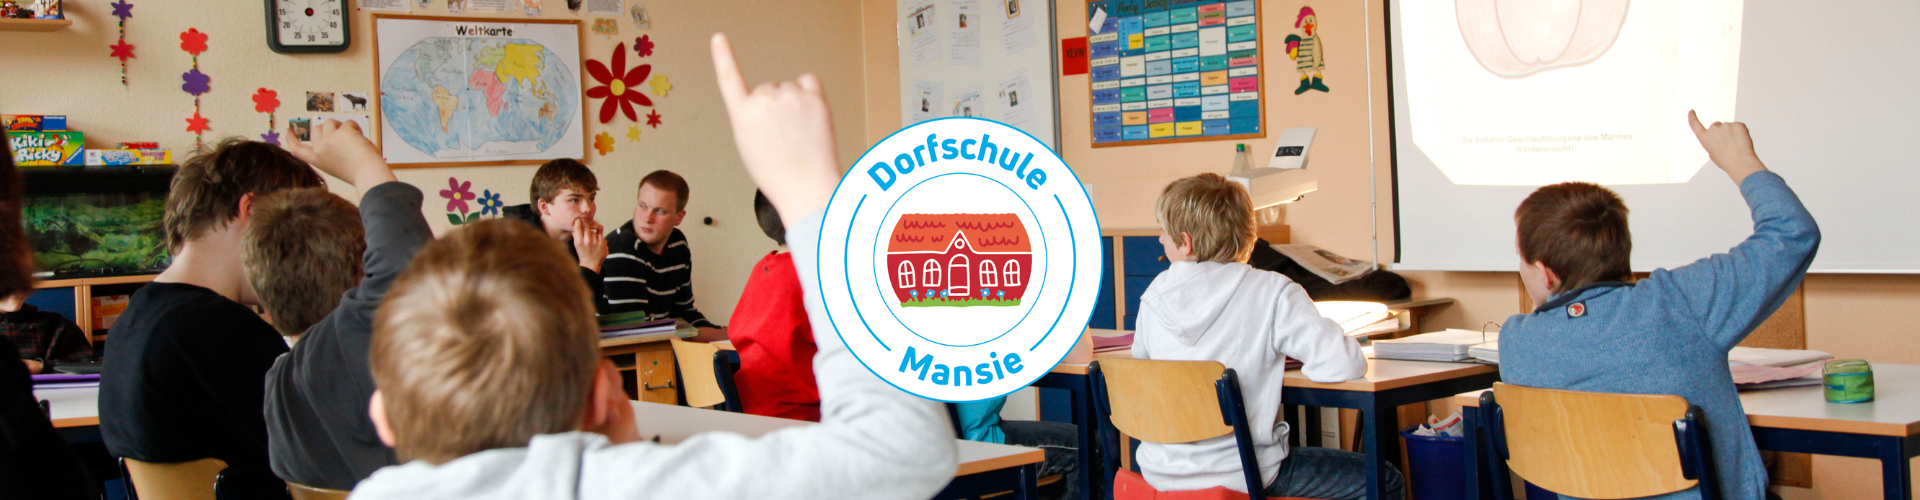 Dorfschule Mansie Titelbild Klassenraum Staatlich Anerkannte Tagesbildungsstätte